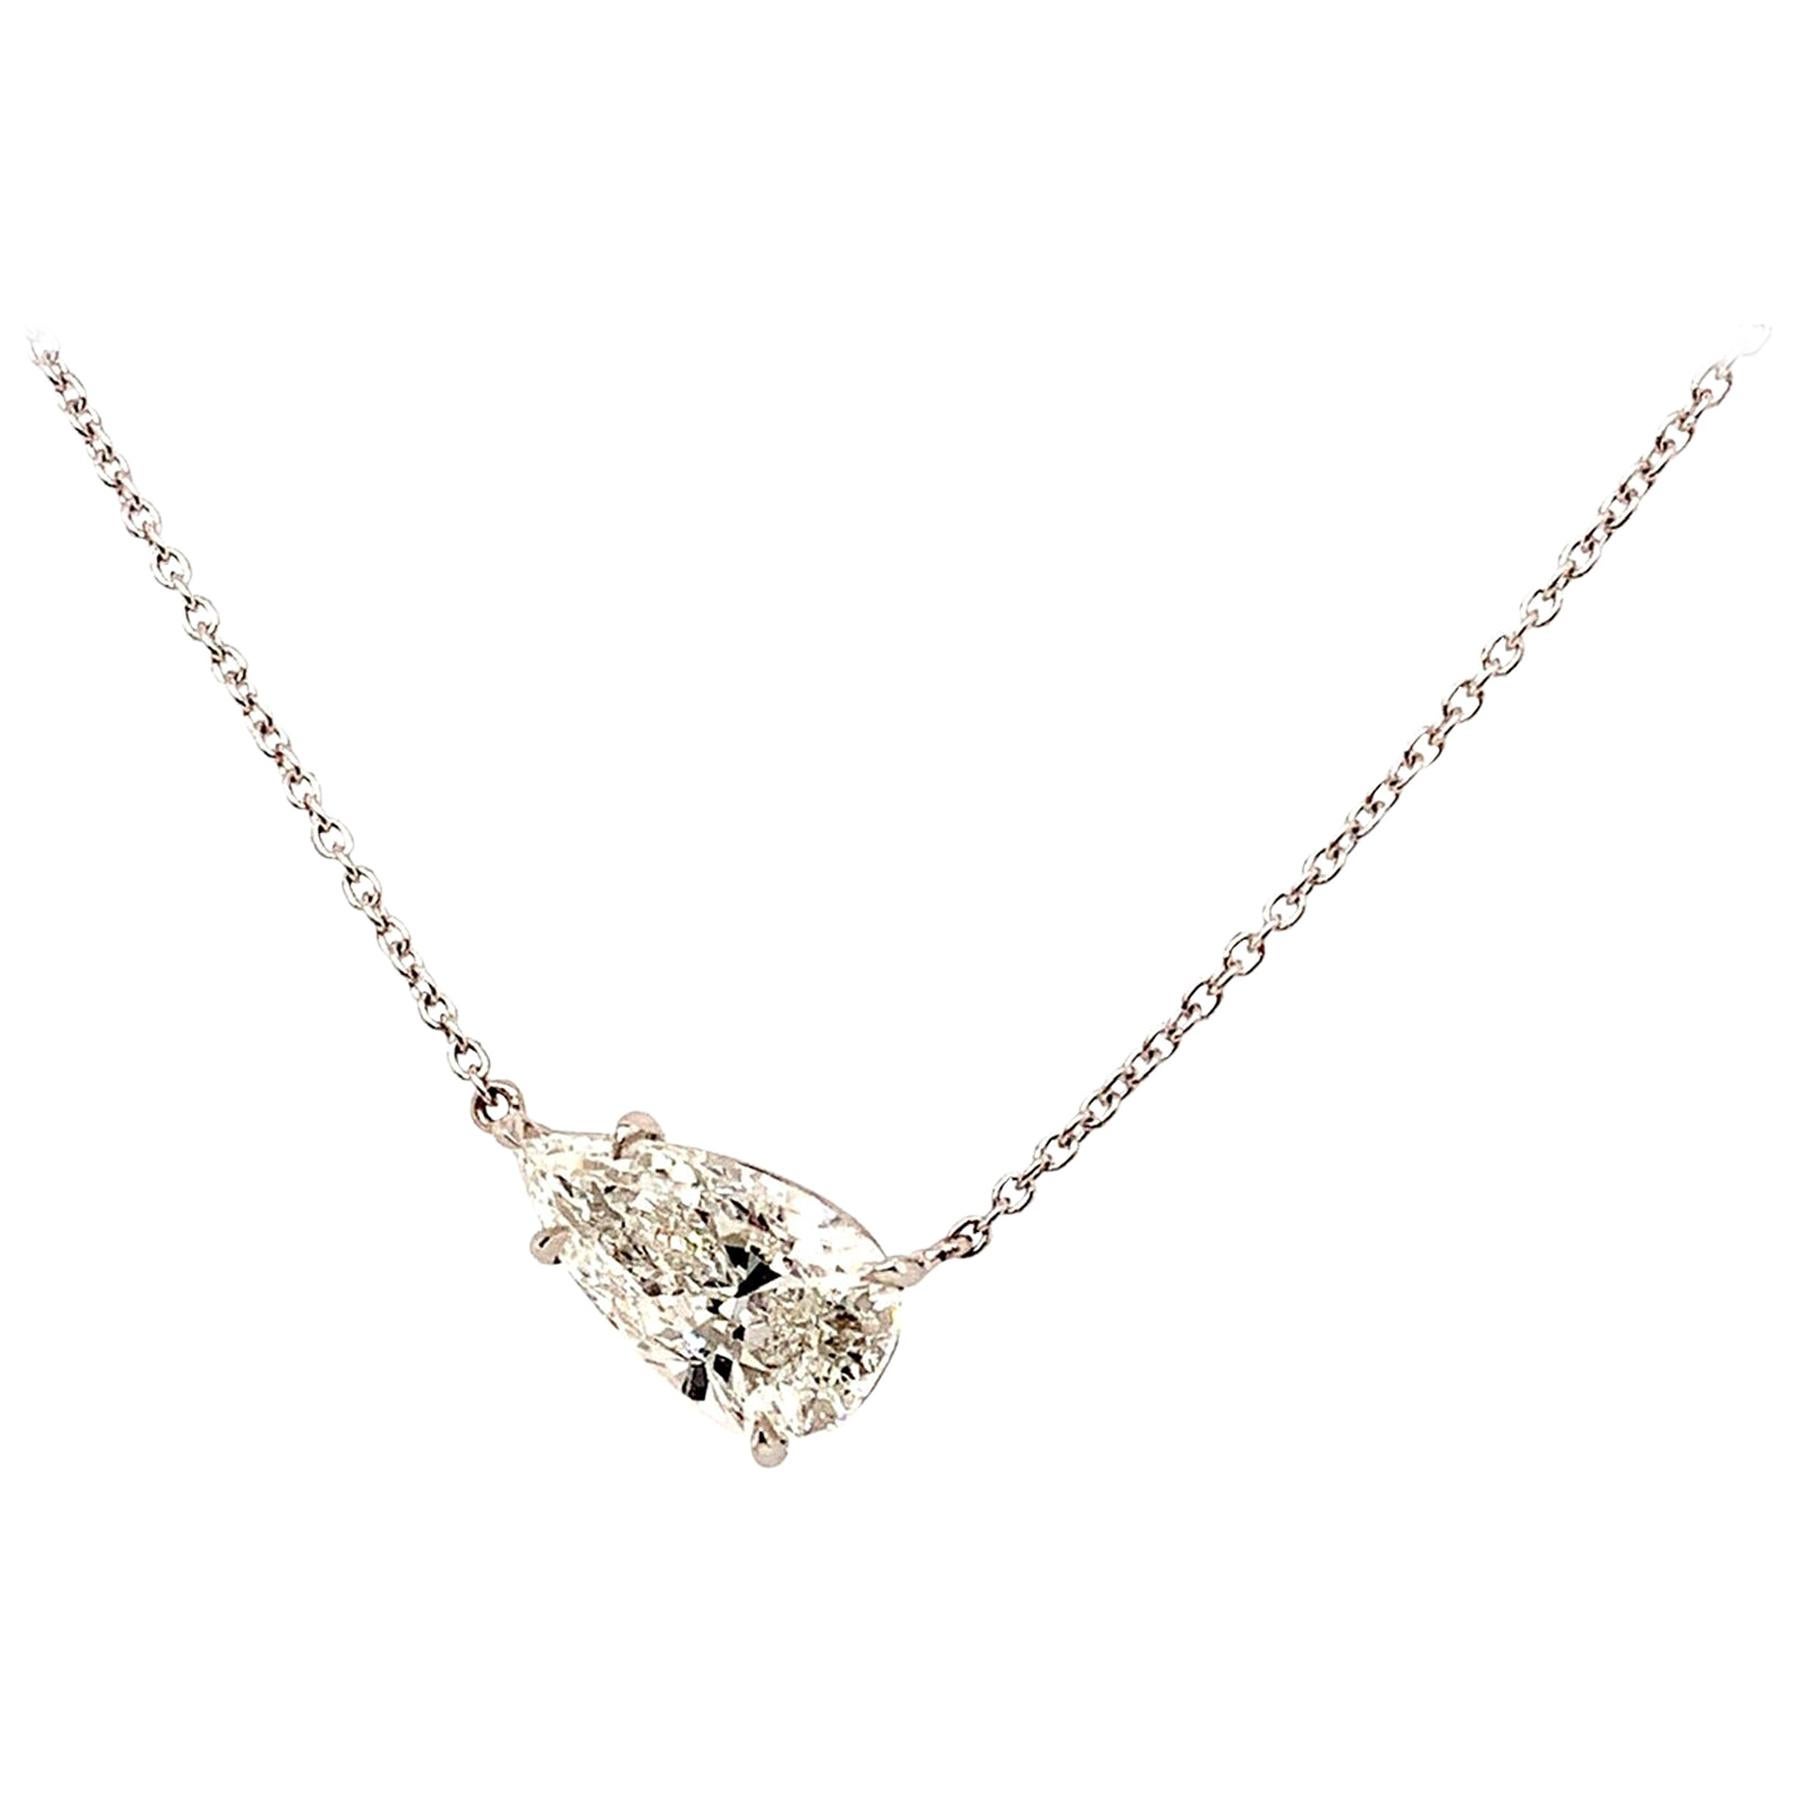 GIA Certified 2.02 Carat Pear Shape Diamond Pendant Necklace